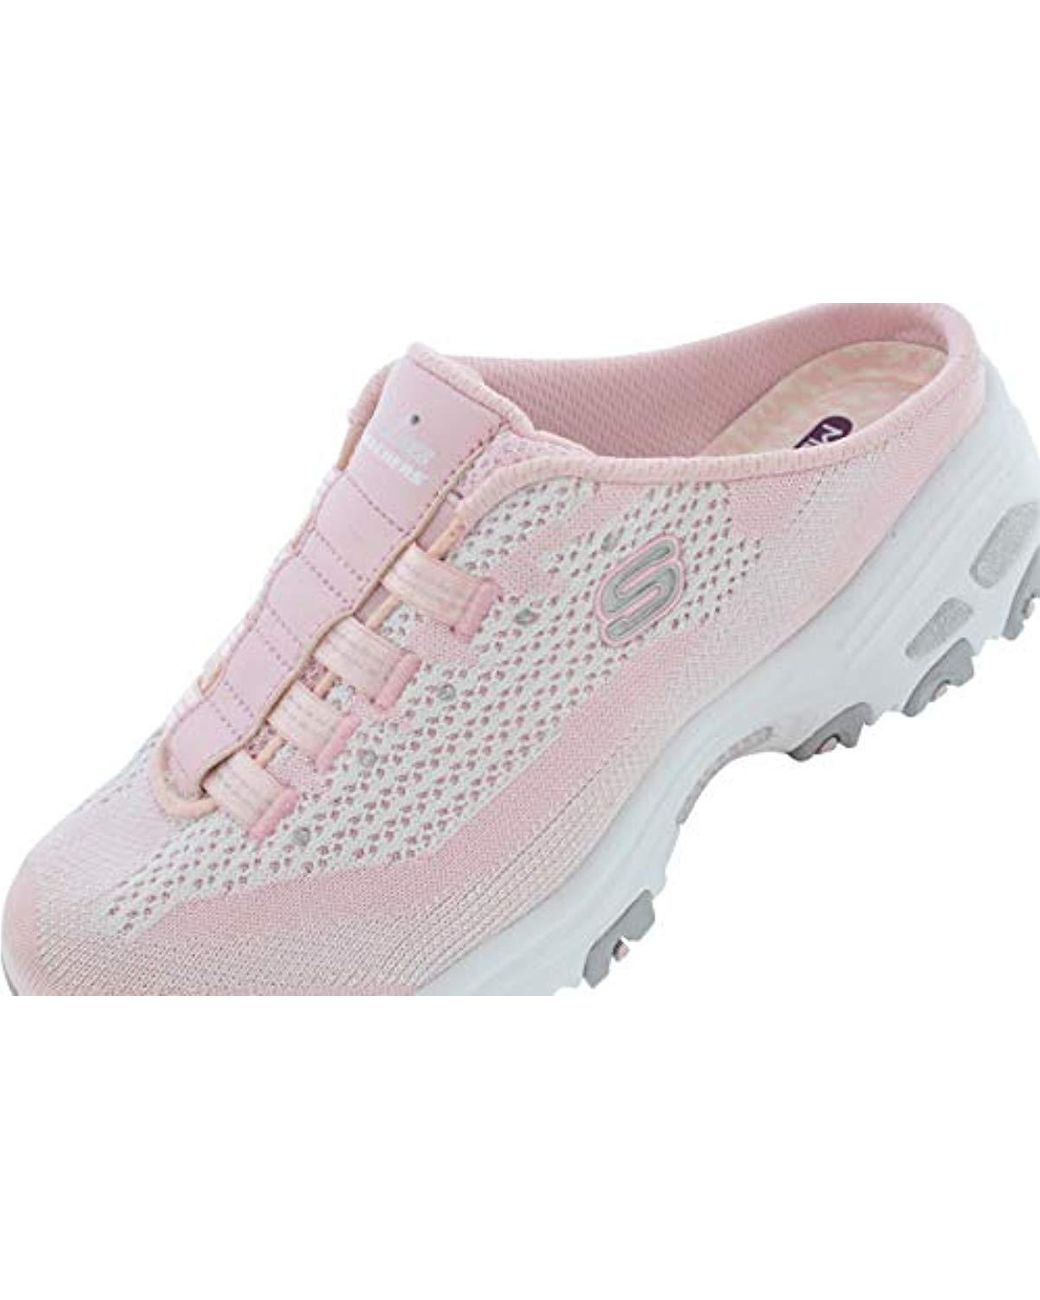 Skechers Sport D'lites Slip-on Mule Sneaker in Light Pink/Black (Pink) |  Lyst